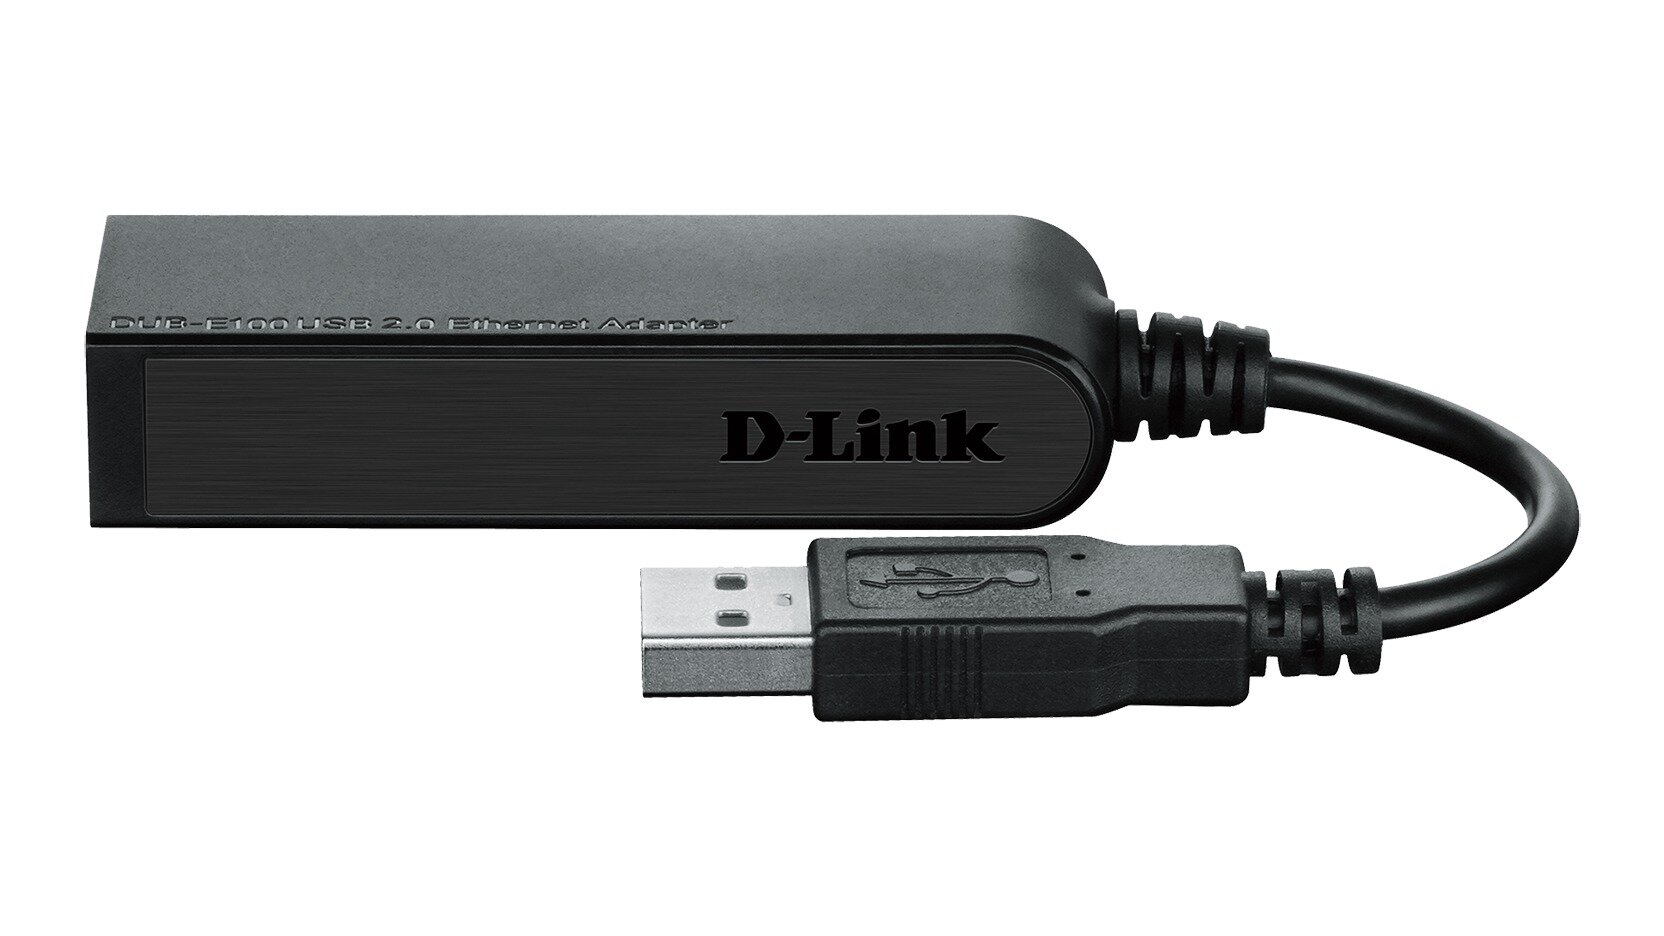 Сетевая карта D-Link DUB-E100 USB 2.0 среда передачи данных кабель 10/100Mbps